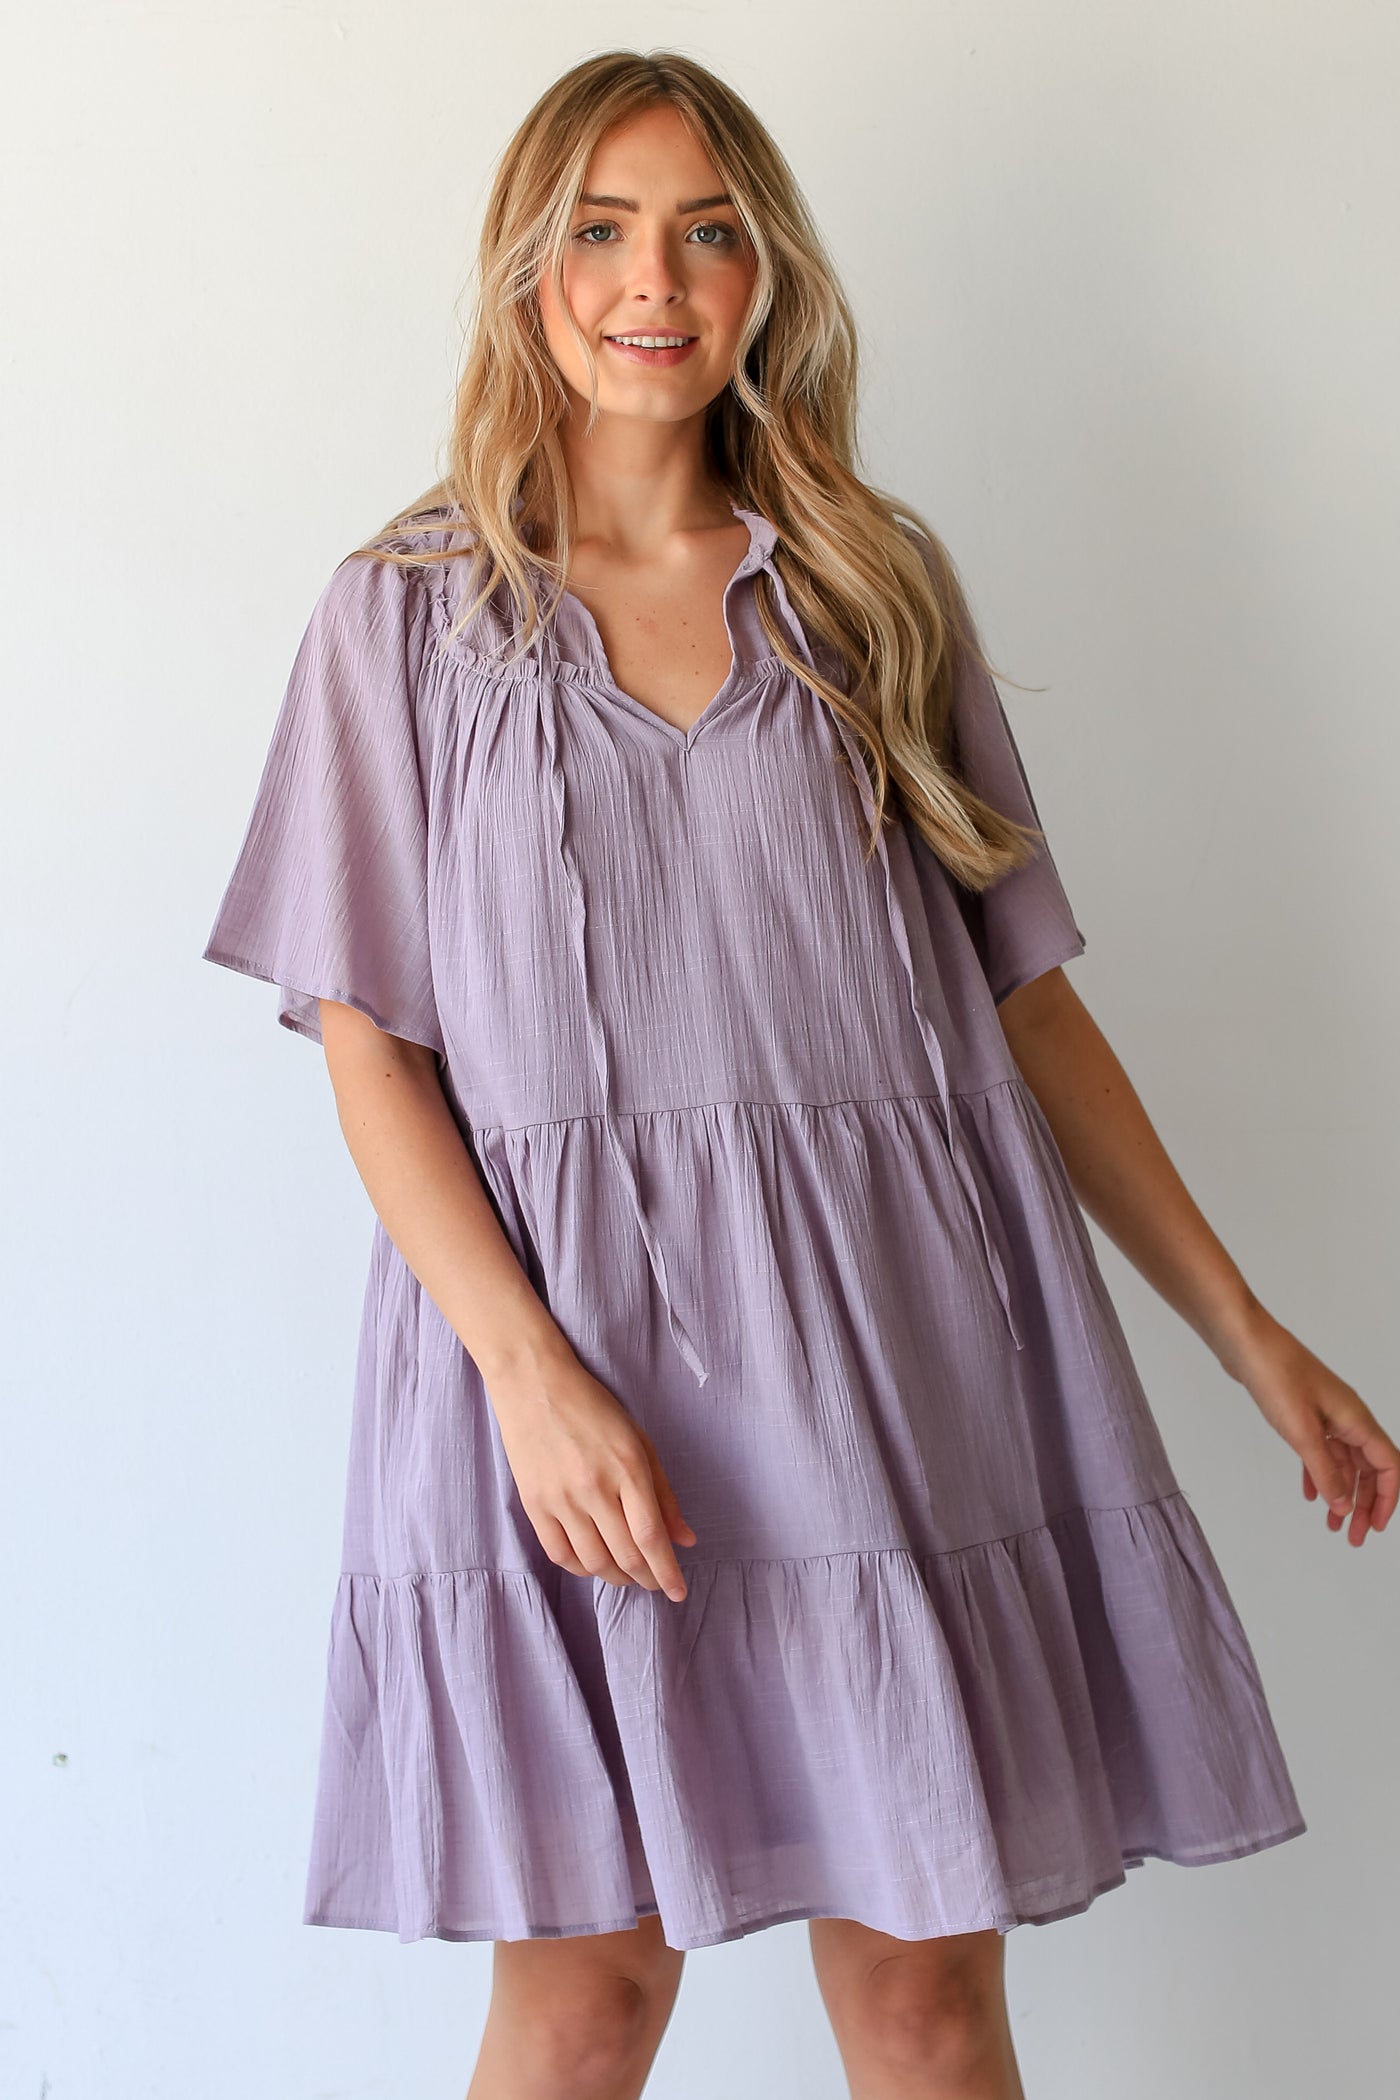 purple Tiered Mini Dress on dress up model